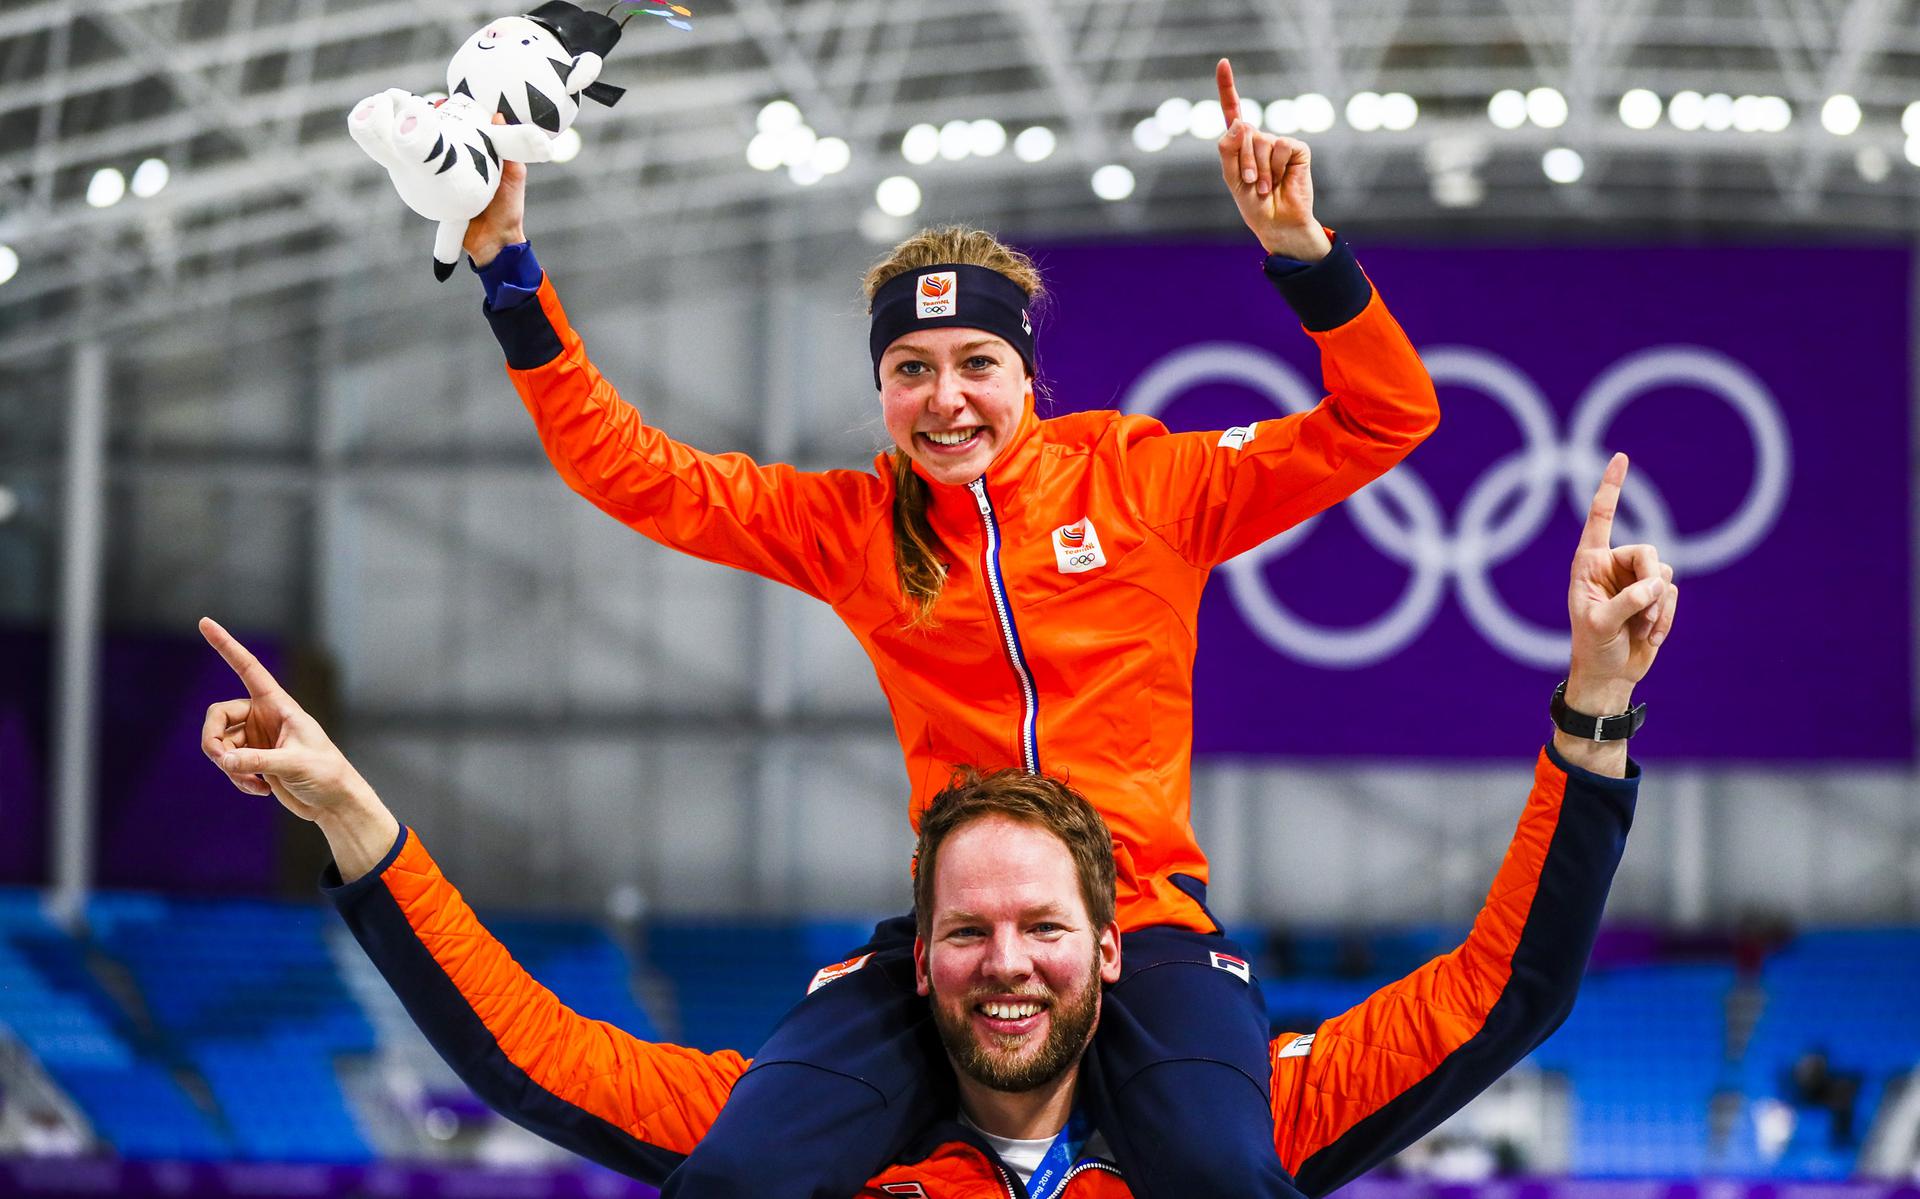 Op de schouders van coach Remmelt Eldering viert Esmee Visser in 2018 de olympische titel op de 5 kilometer.